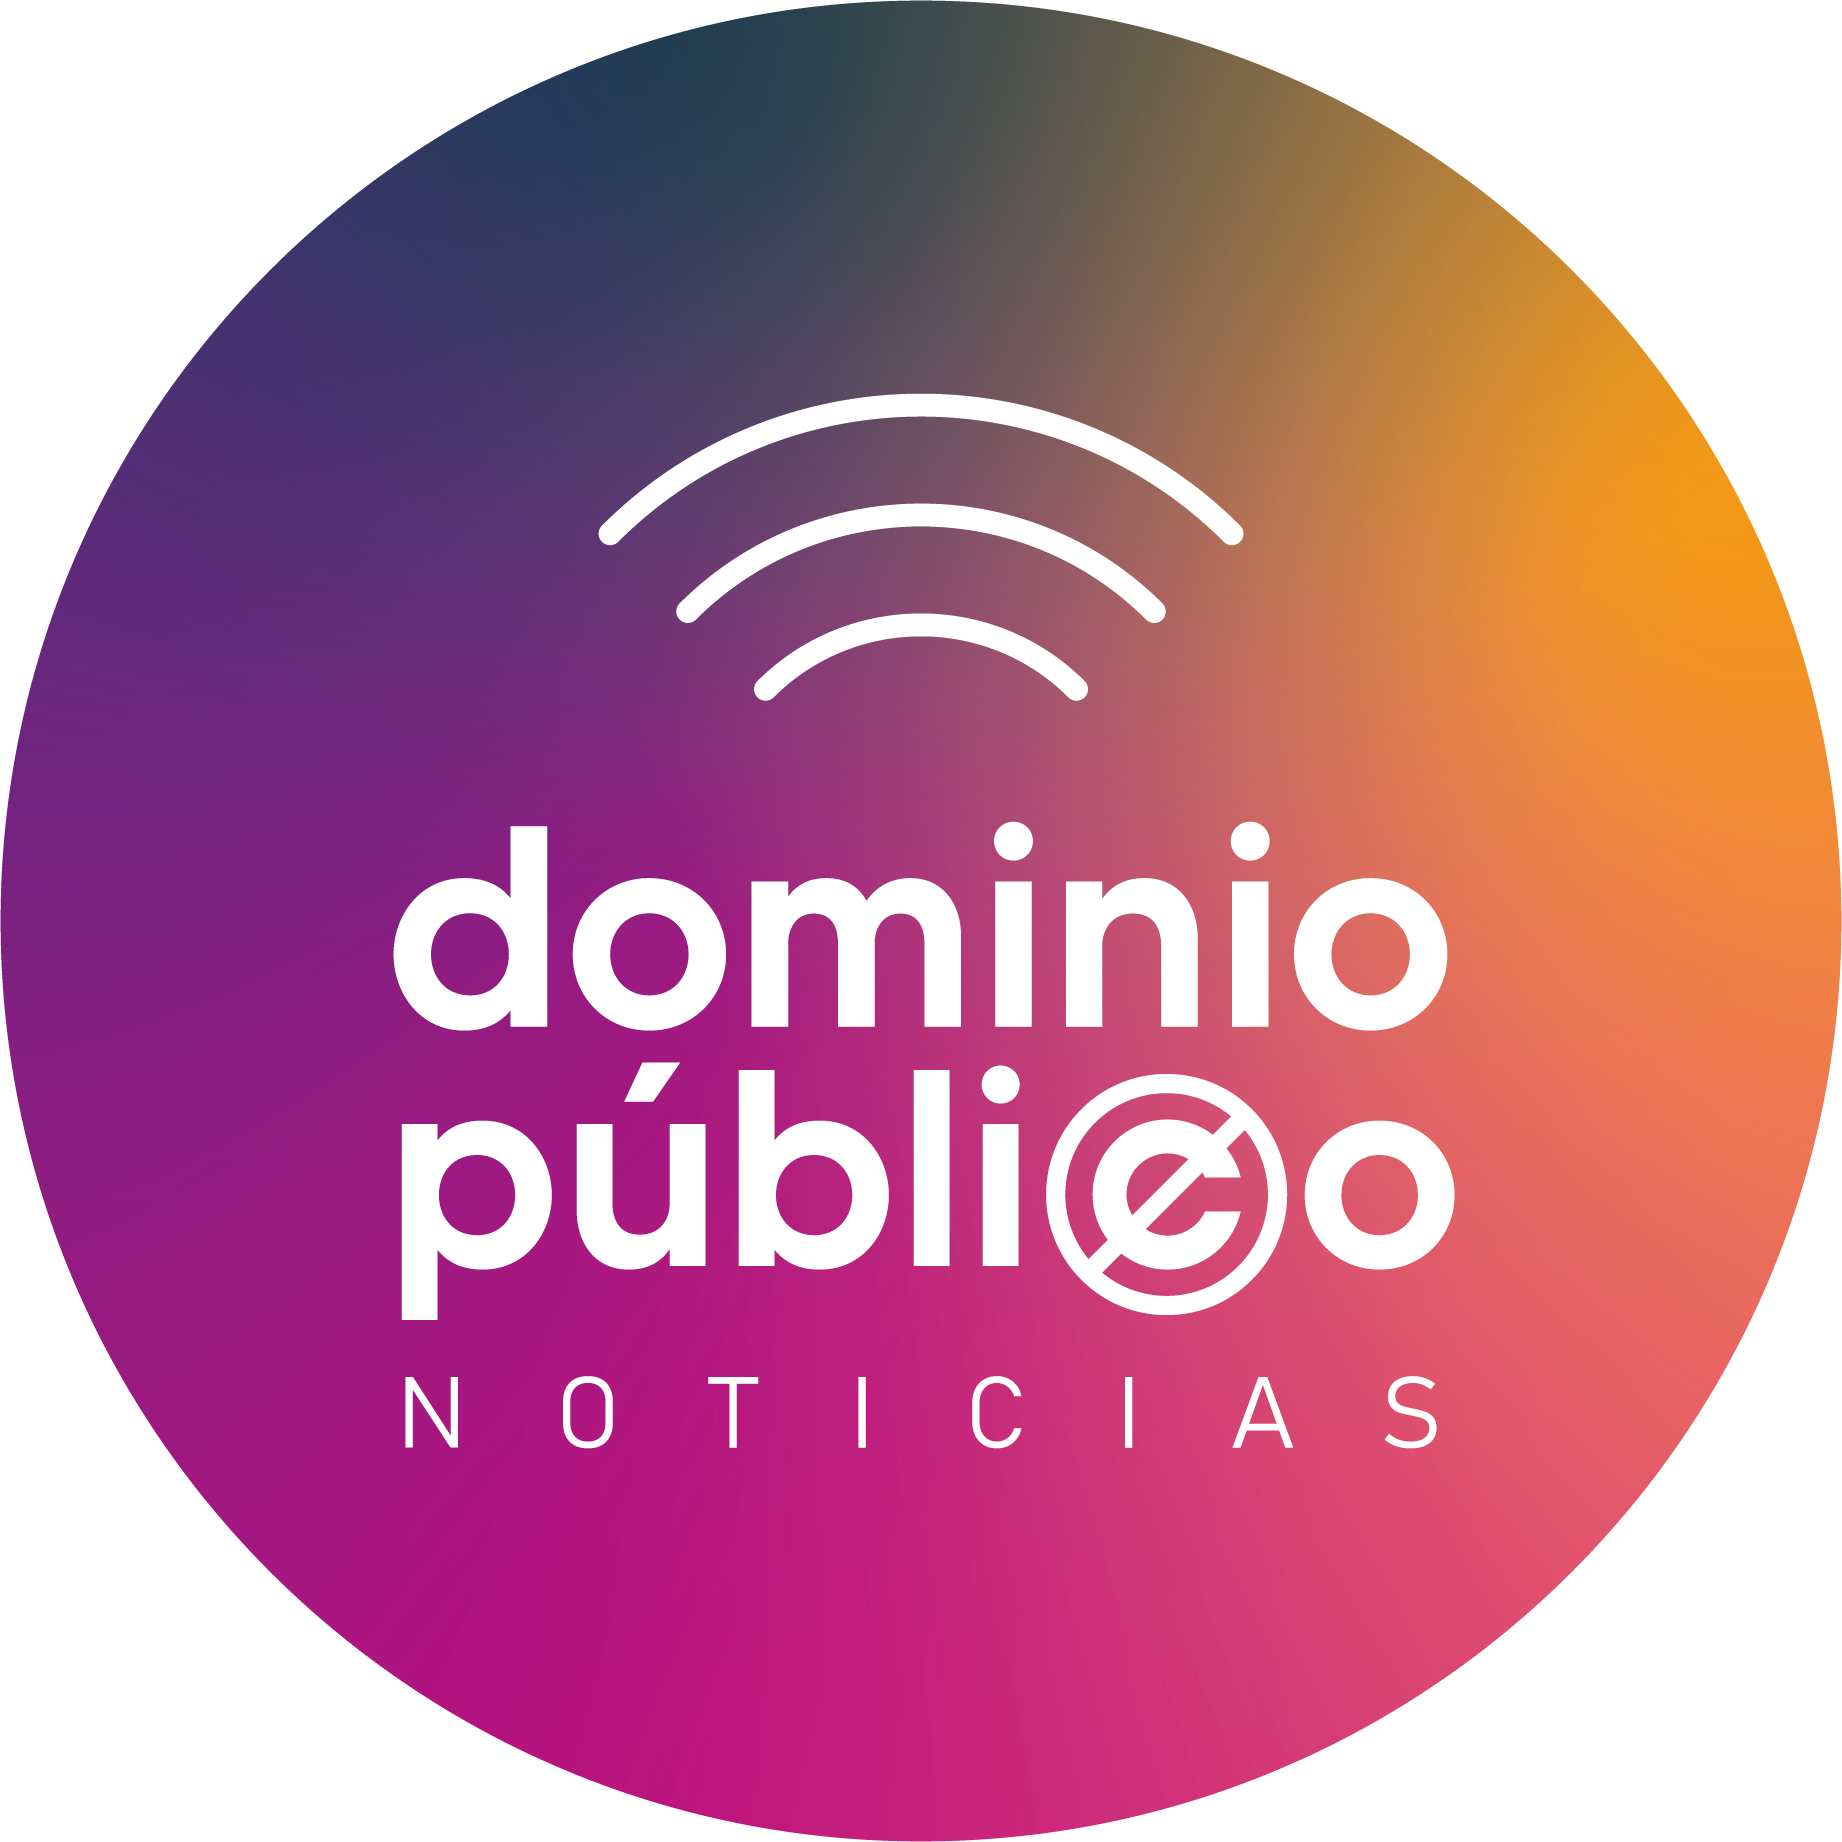 www.dominiopublico.com.mx